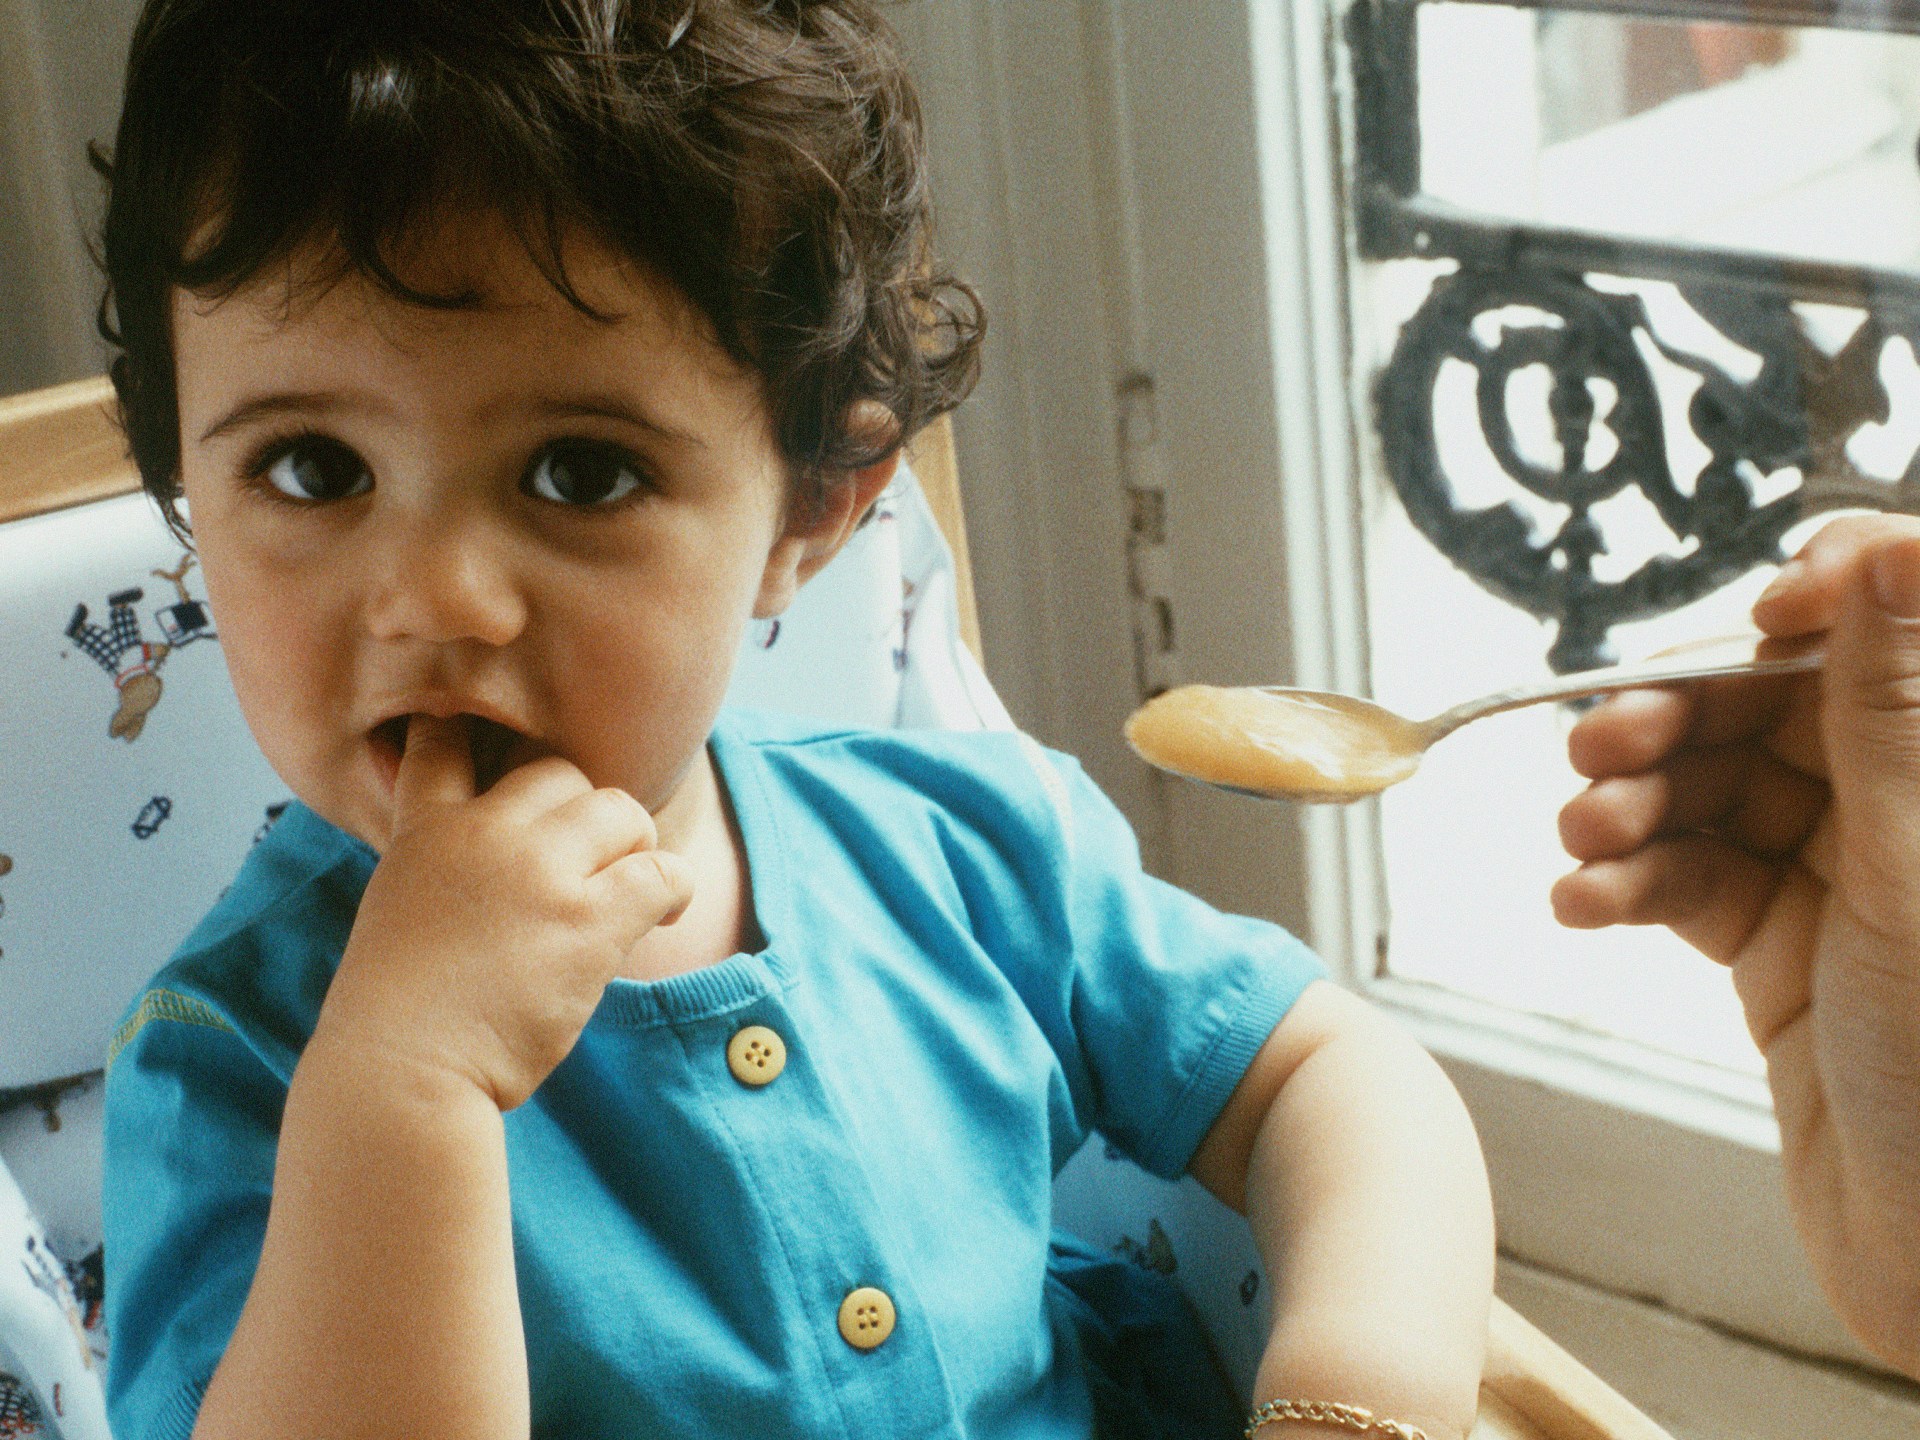 كيف تعيدين تسخين الطعام لطفلك الصغير؟ وهل استخدام المايكرويف آمن؟ | مرأة – البوكس نيوز